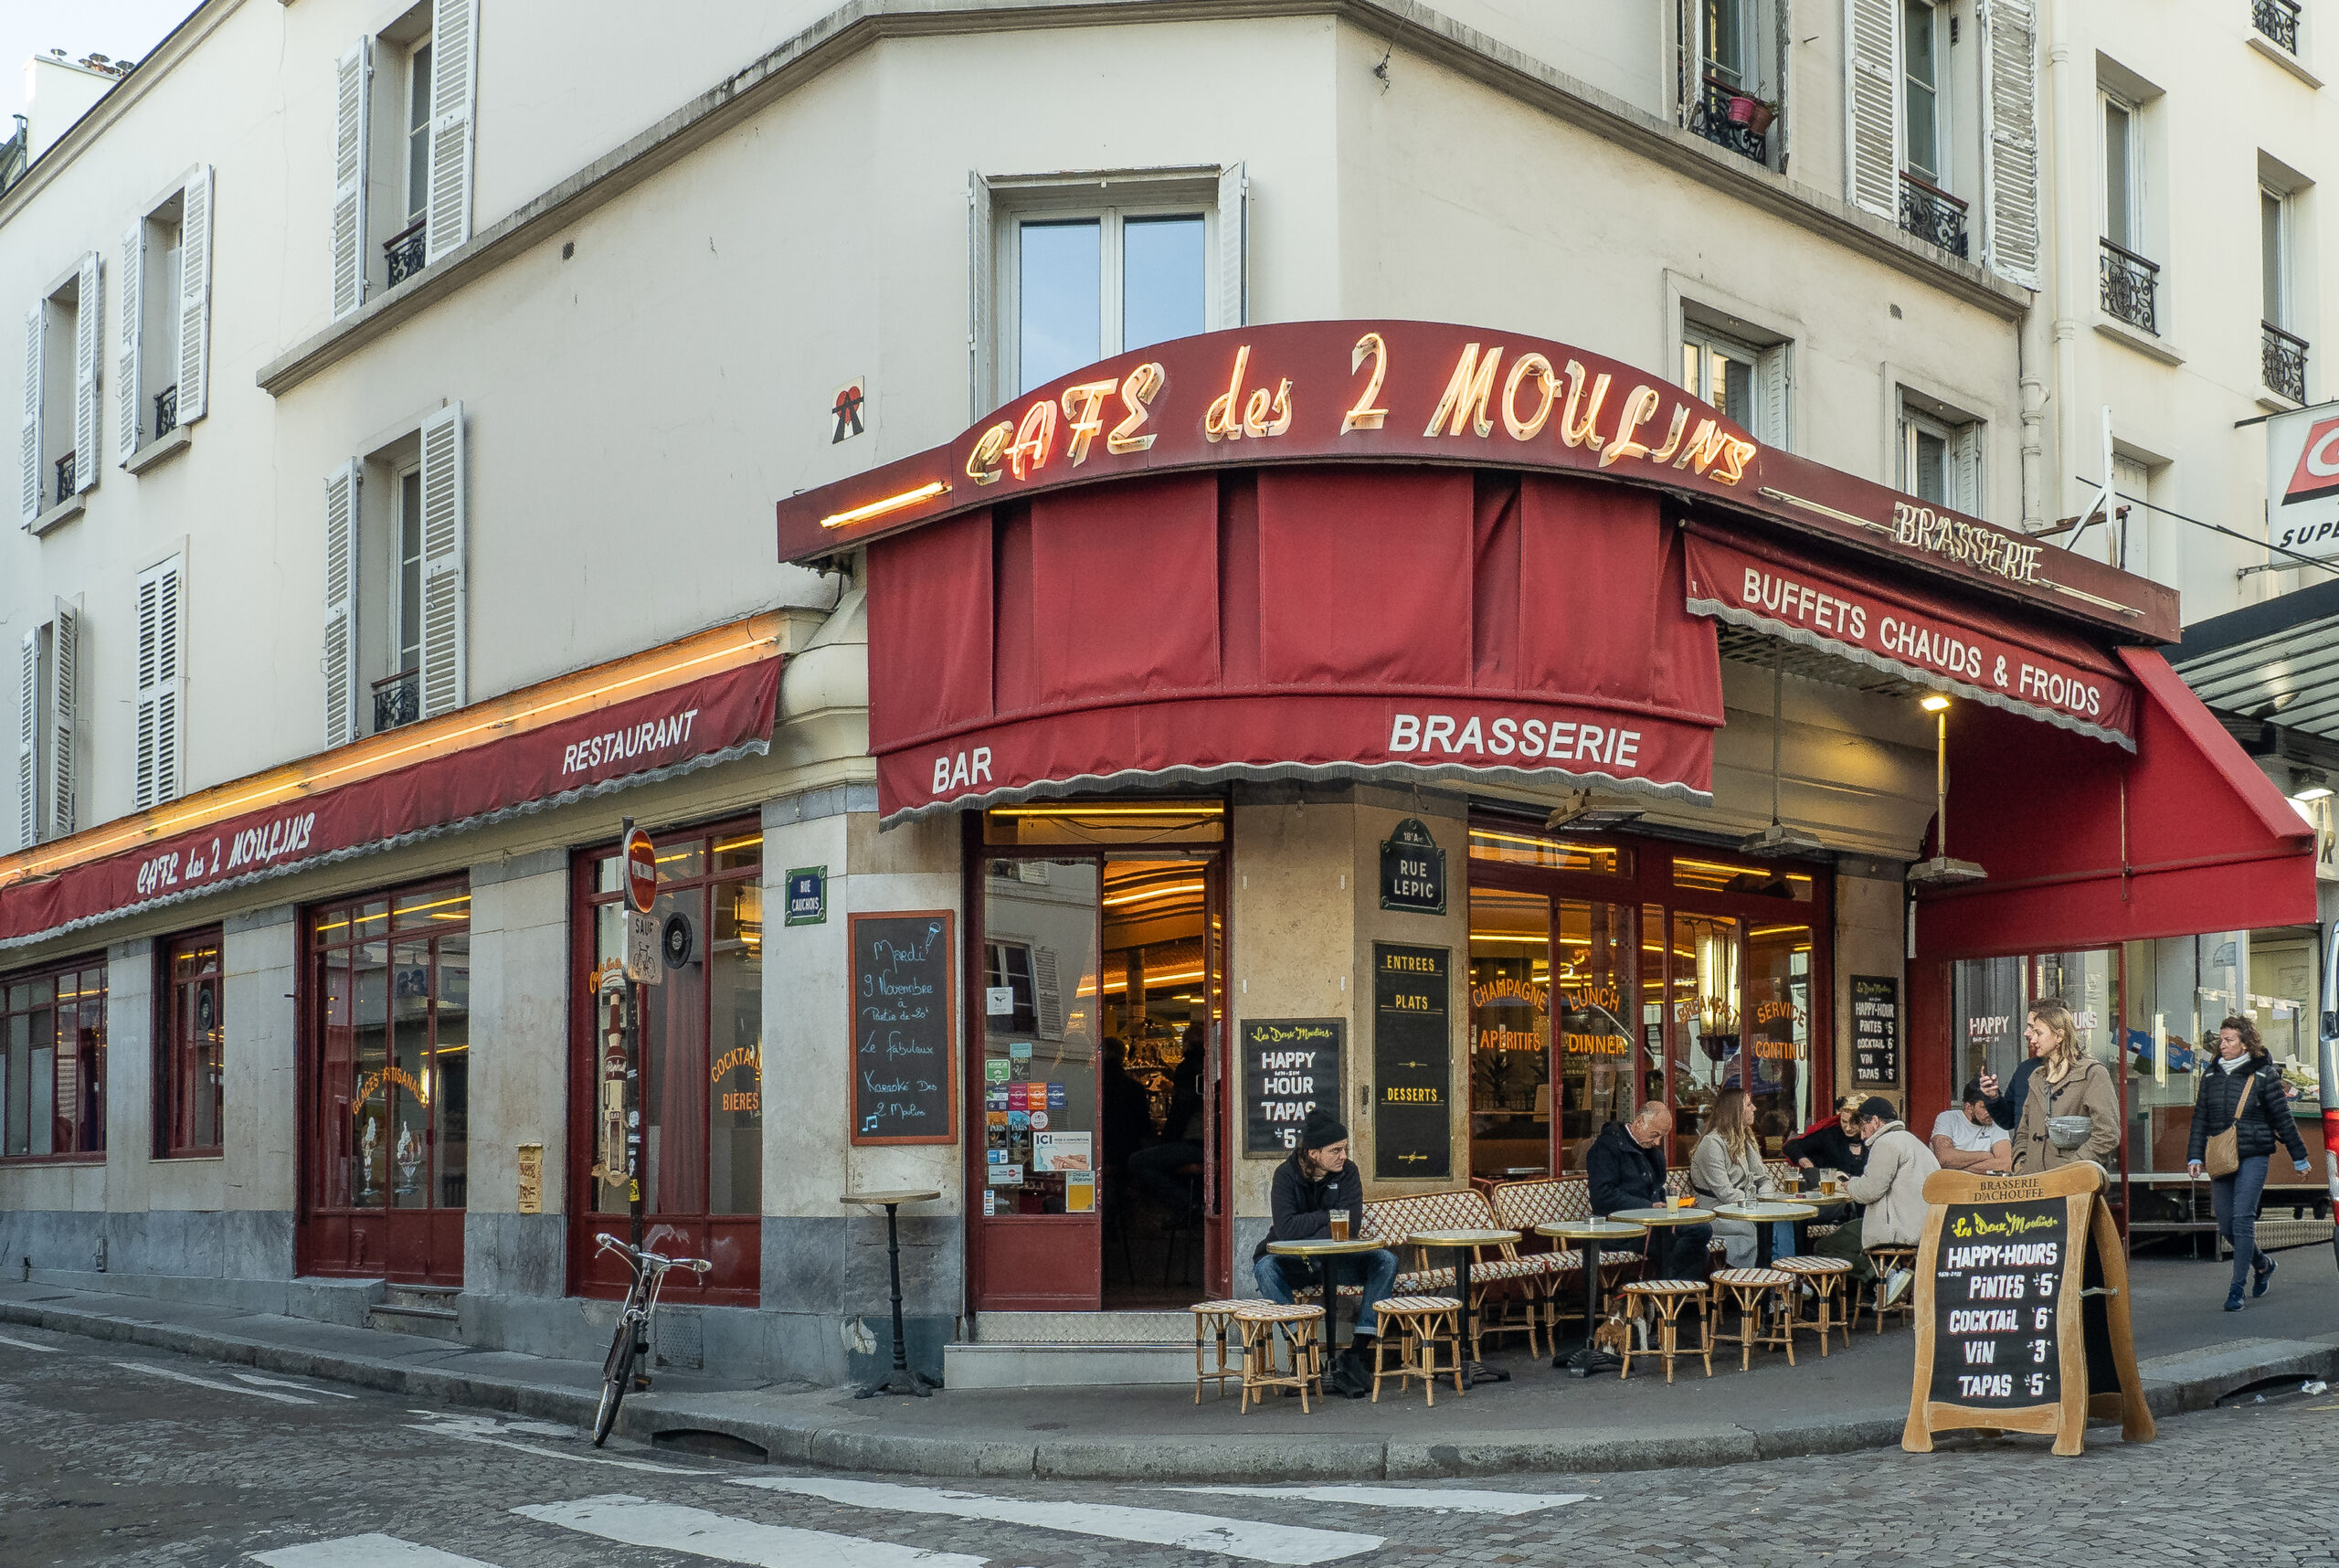 Cafes, Bars & Brasseries of Paris, Part 5